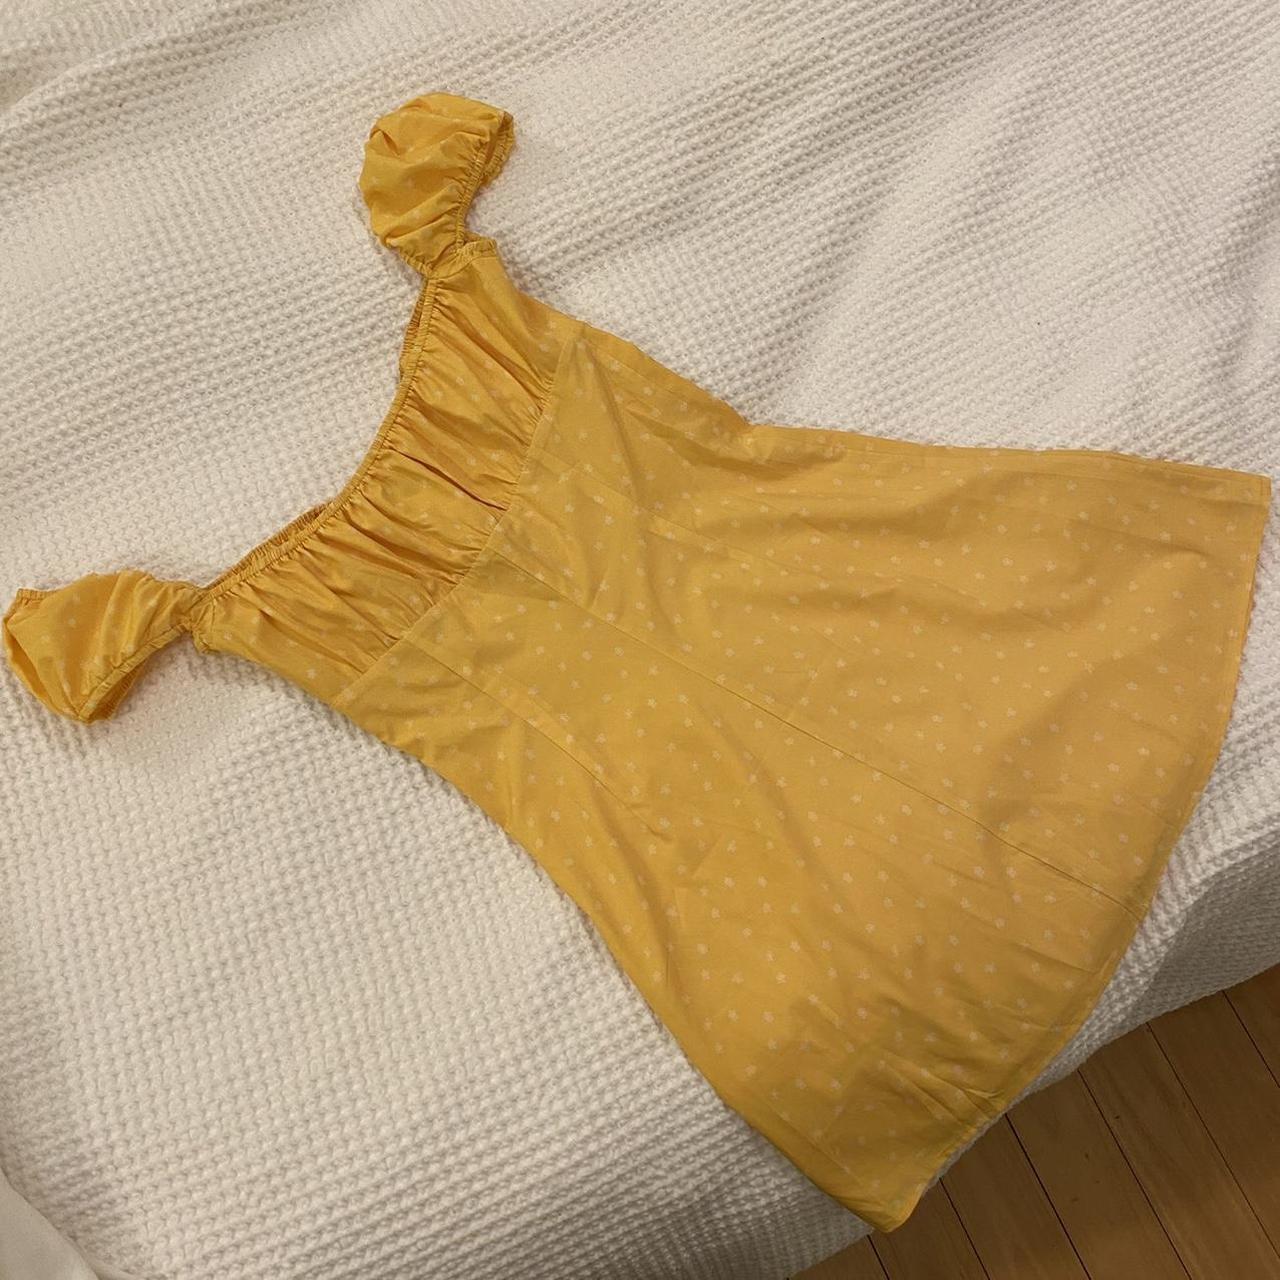 REPOP TIGER MIST sunrise dress- mustard yellow mini - Depop